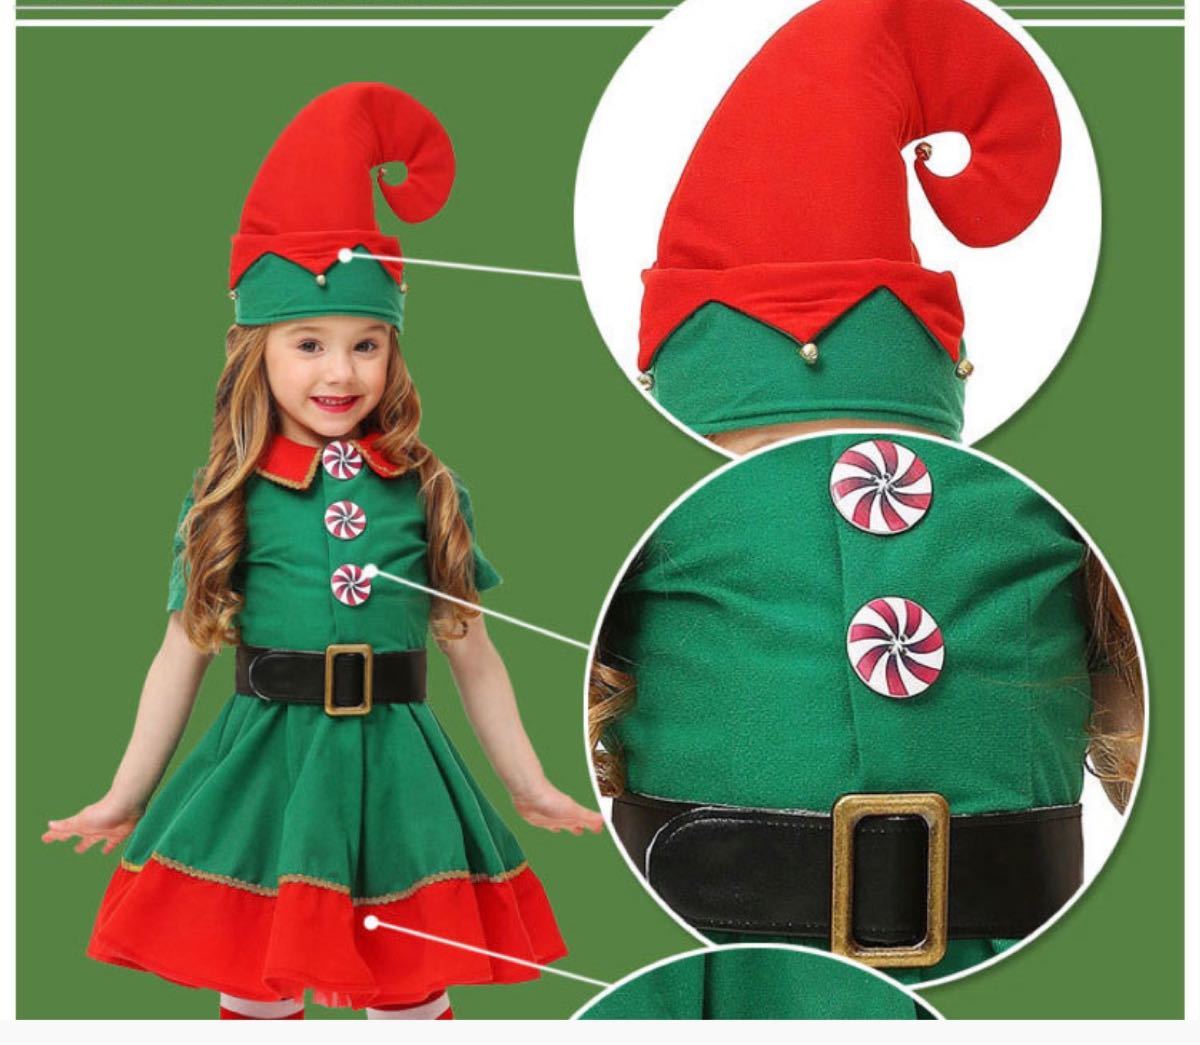 110 ハロウィン クリスマス 衣装 サンタクロース コスプレ 女の子 ワンピース 子供服 パーティー 